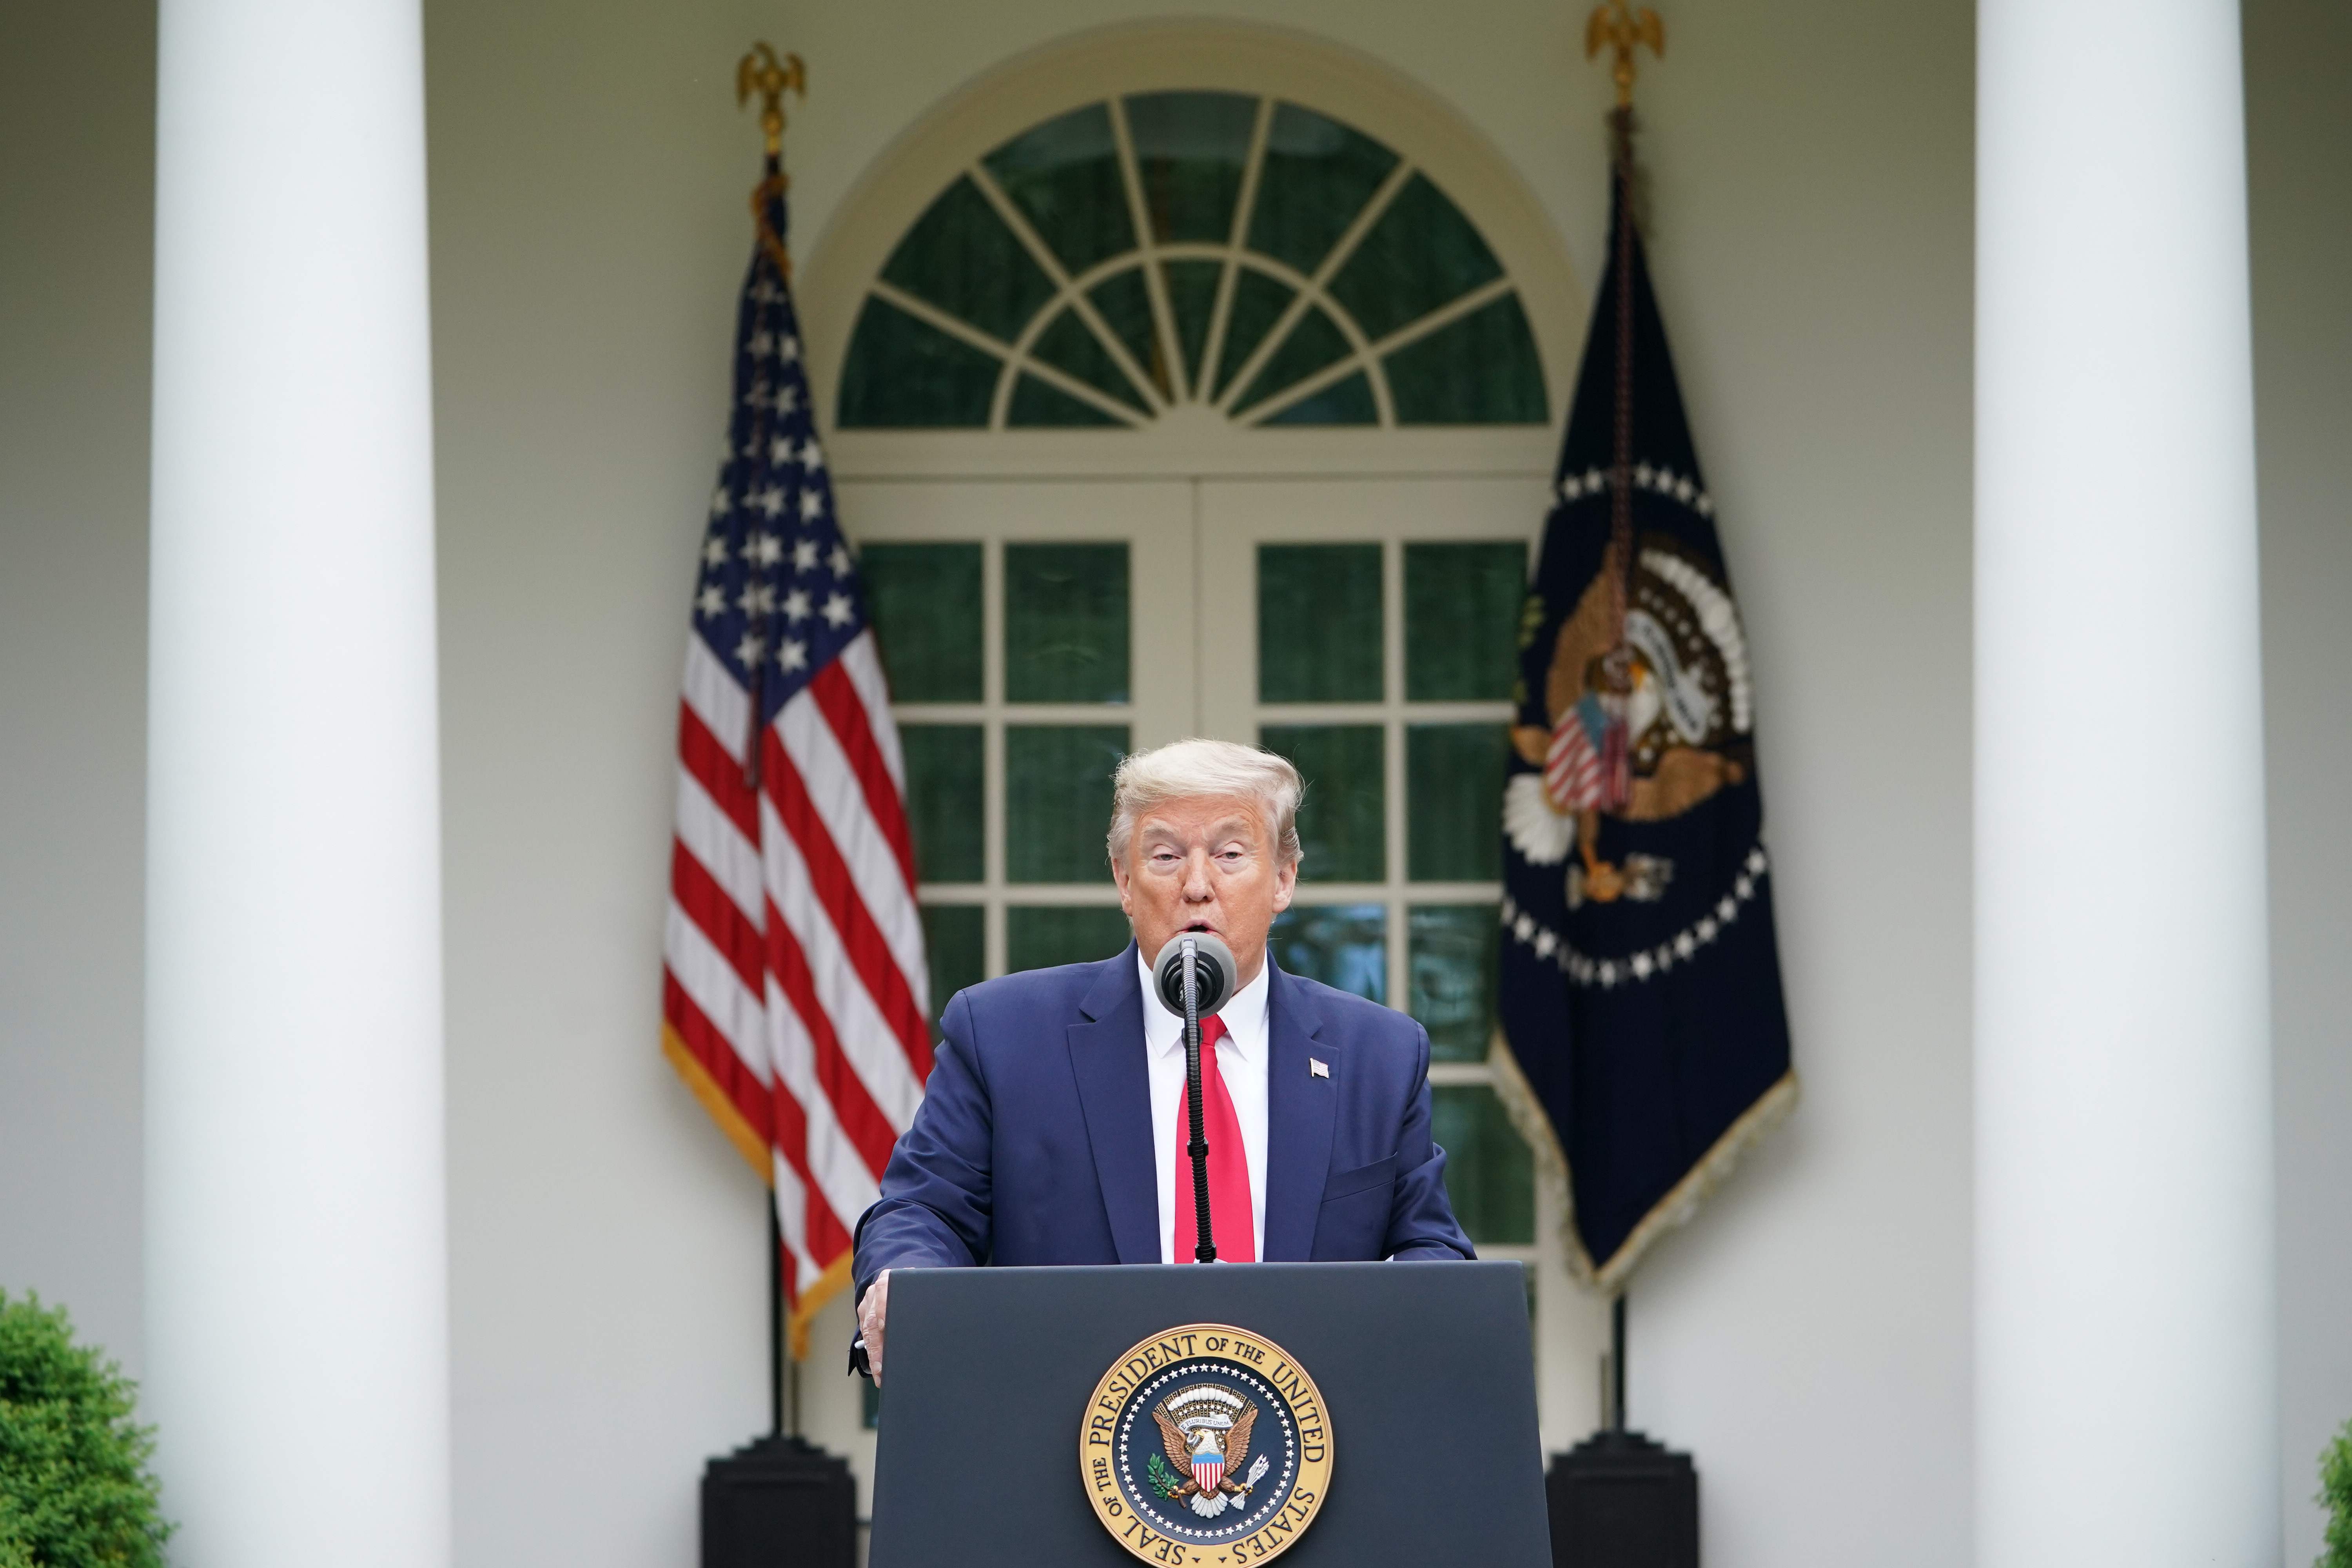 Donald Trump, presidente de Estados Unidos, da una conferencia de prensa en un jardín de la Casa Blanca. (Foto Prensa Libre: AFP)